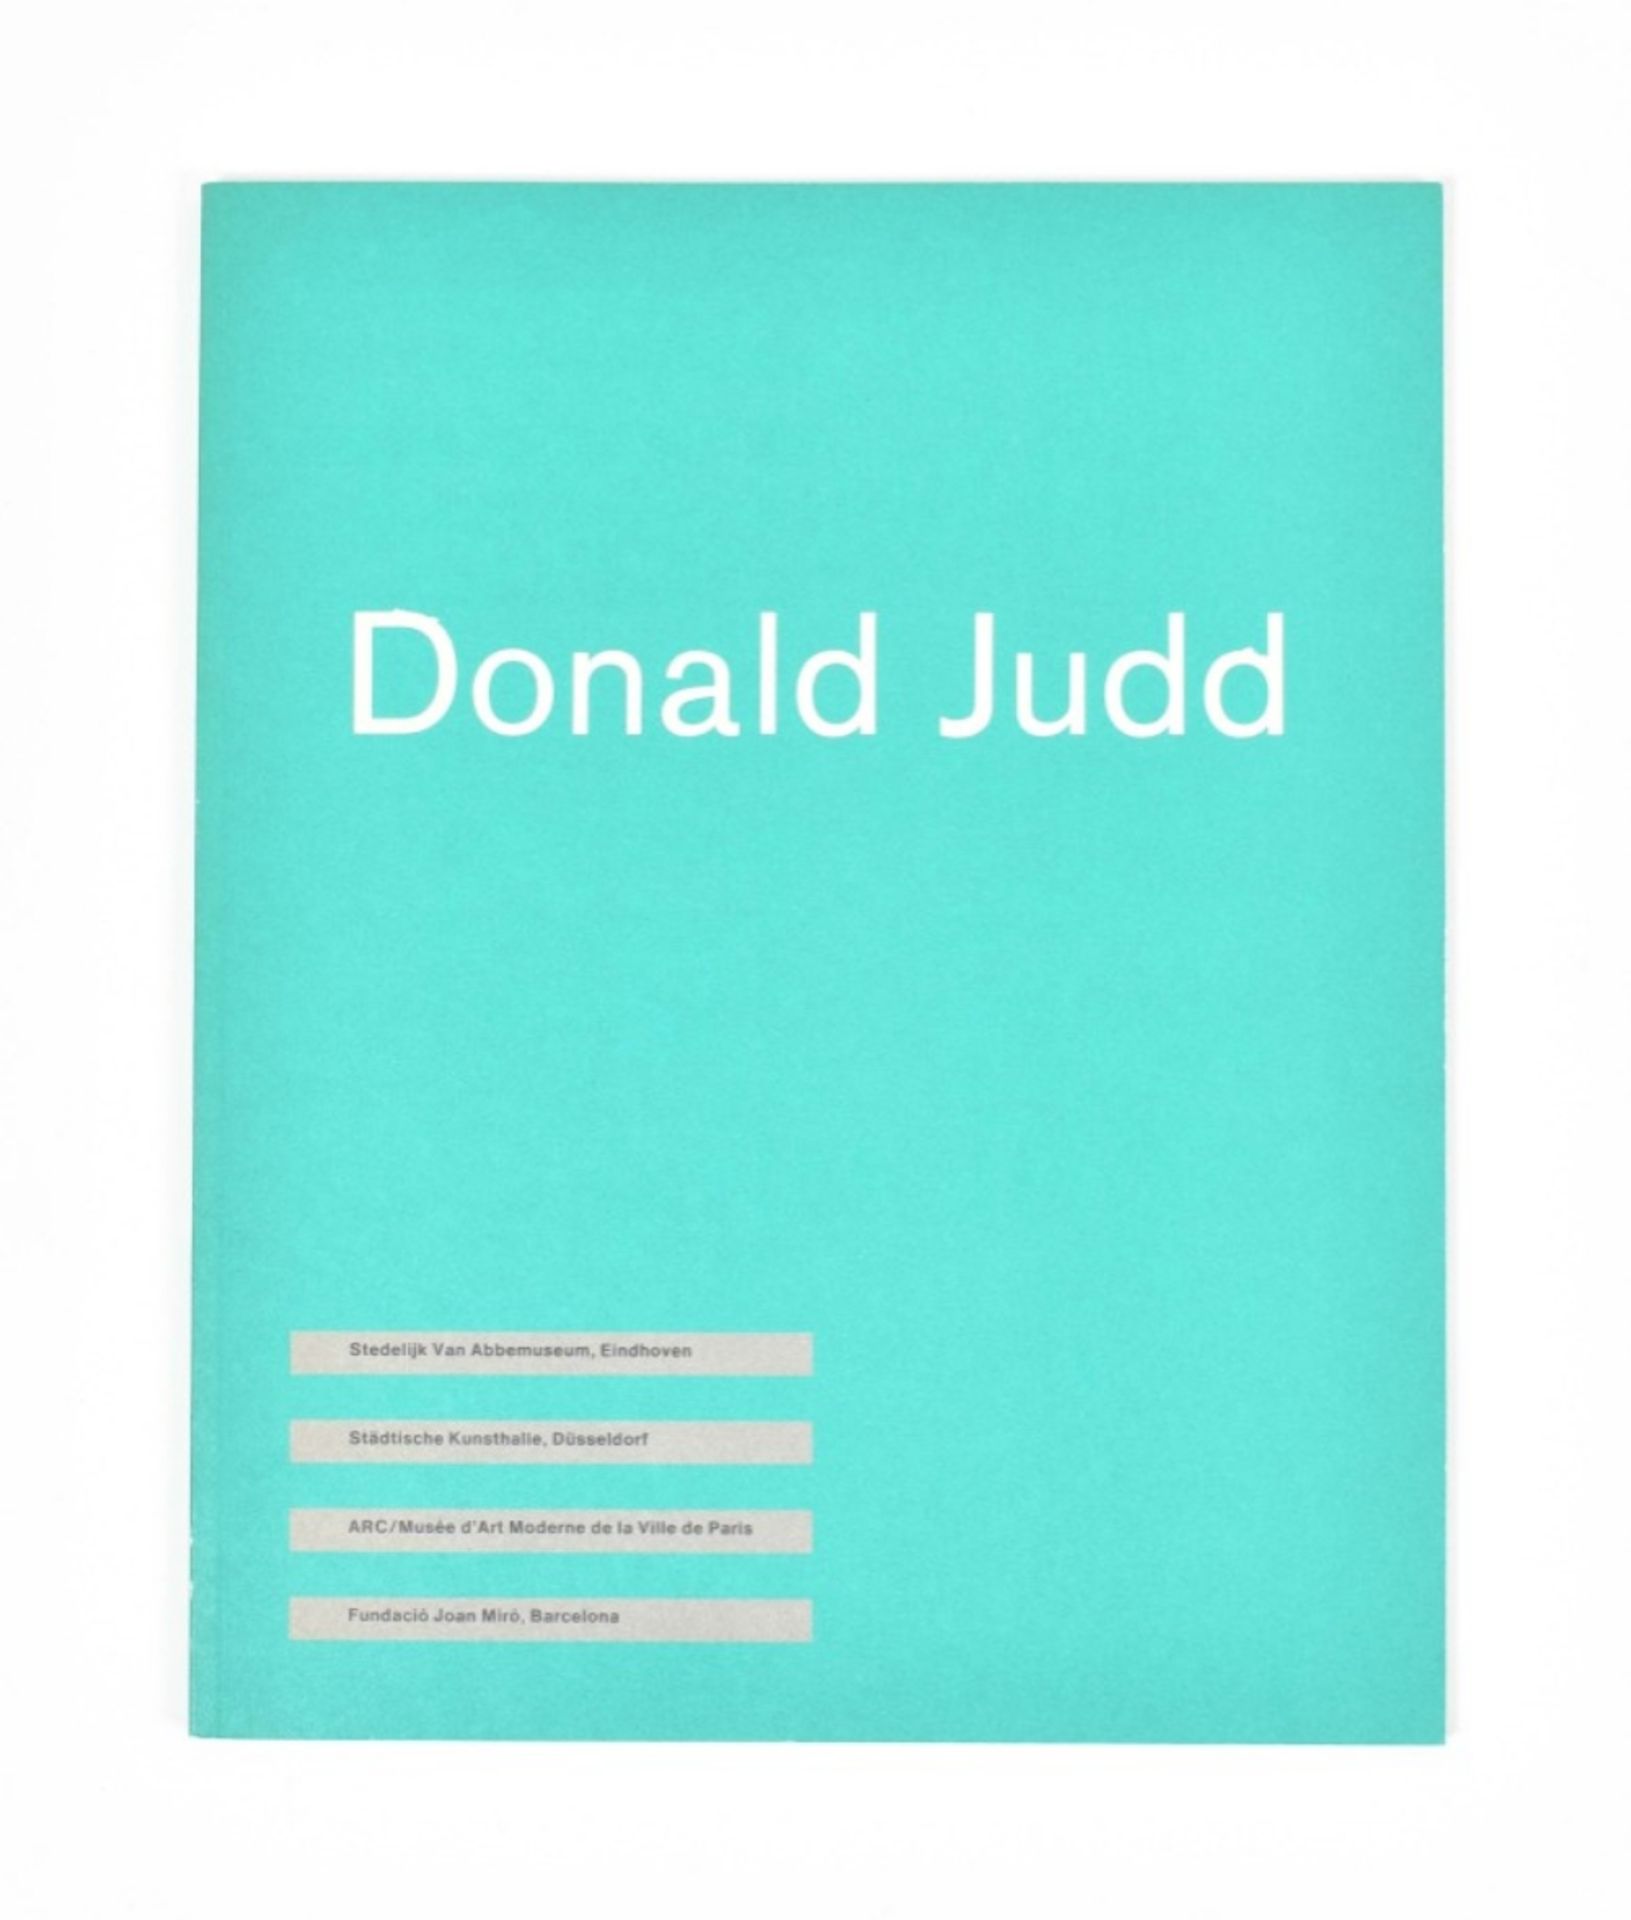 [s and 1970s] Donald Judd  - Bild 3 aus 6